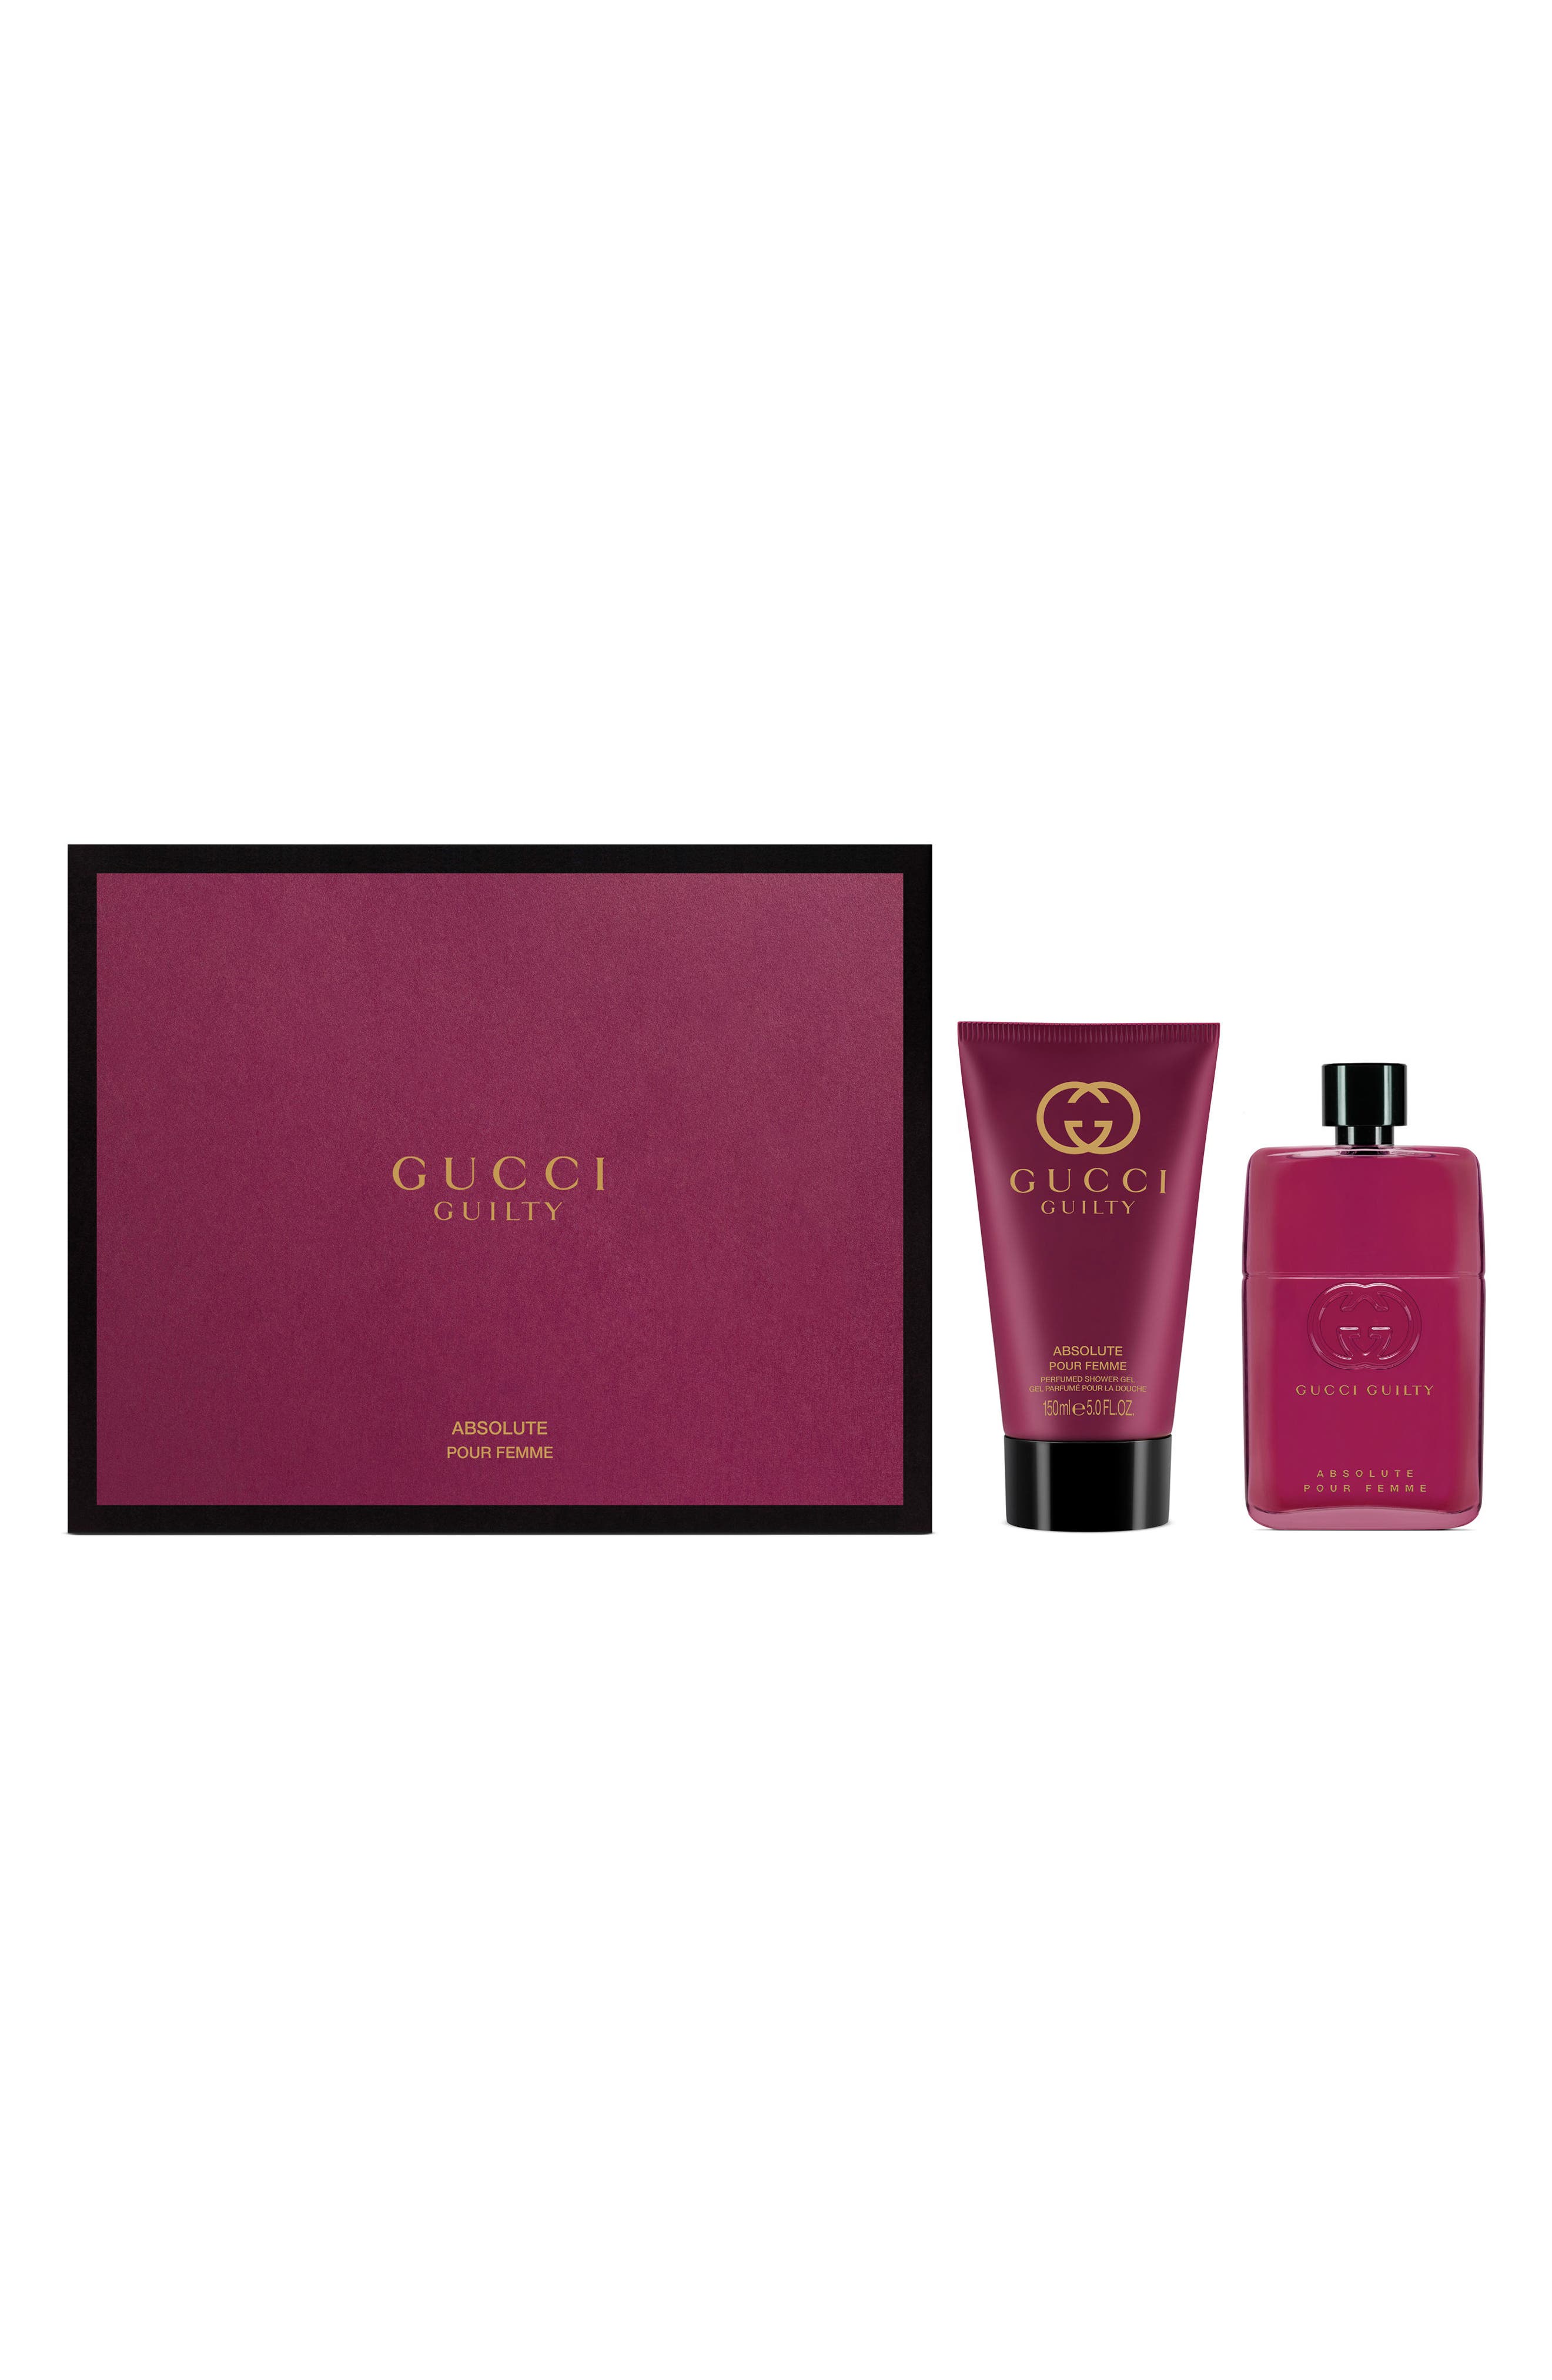 EAN 8005610697673 product image for Gucci Guilty Absolute Pour Femme Eau De Parfum Set | upcitemdb.com